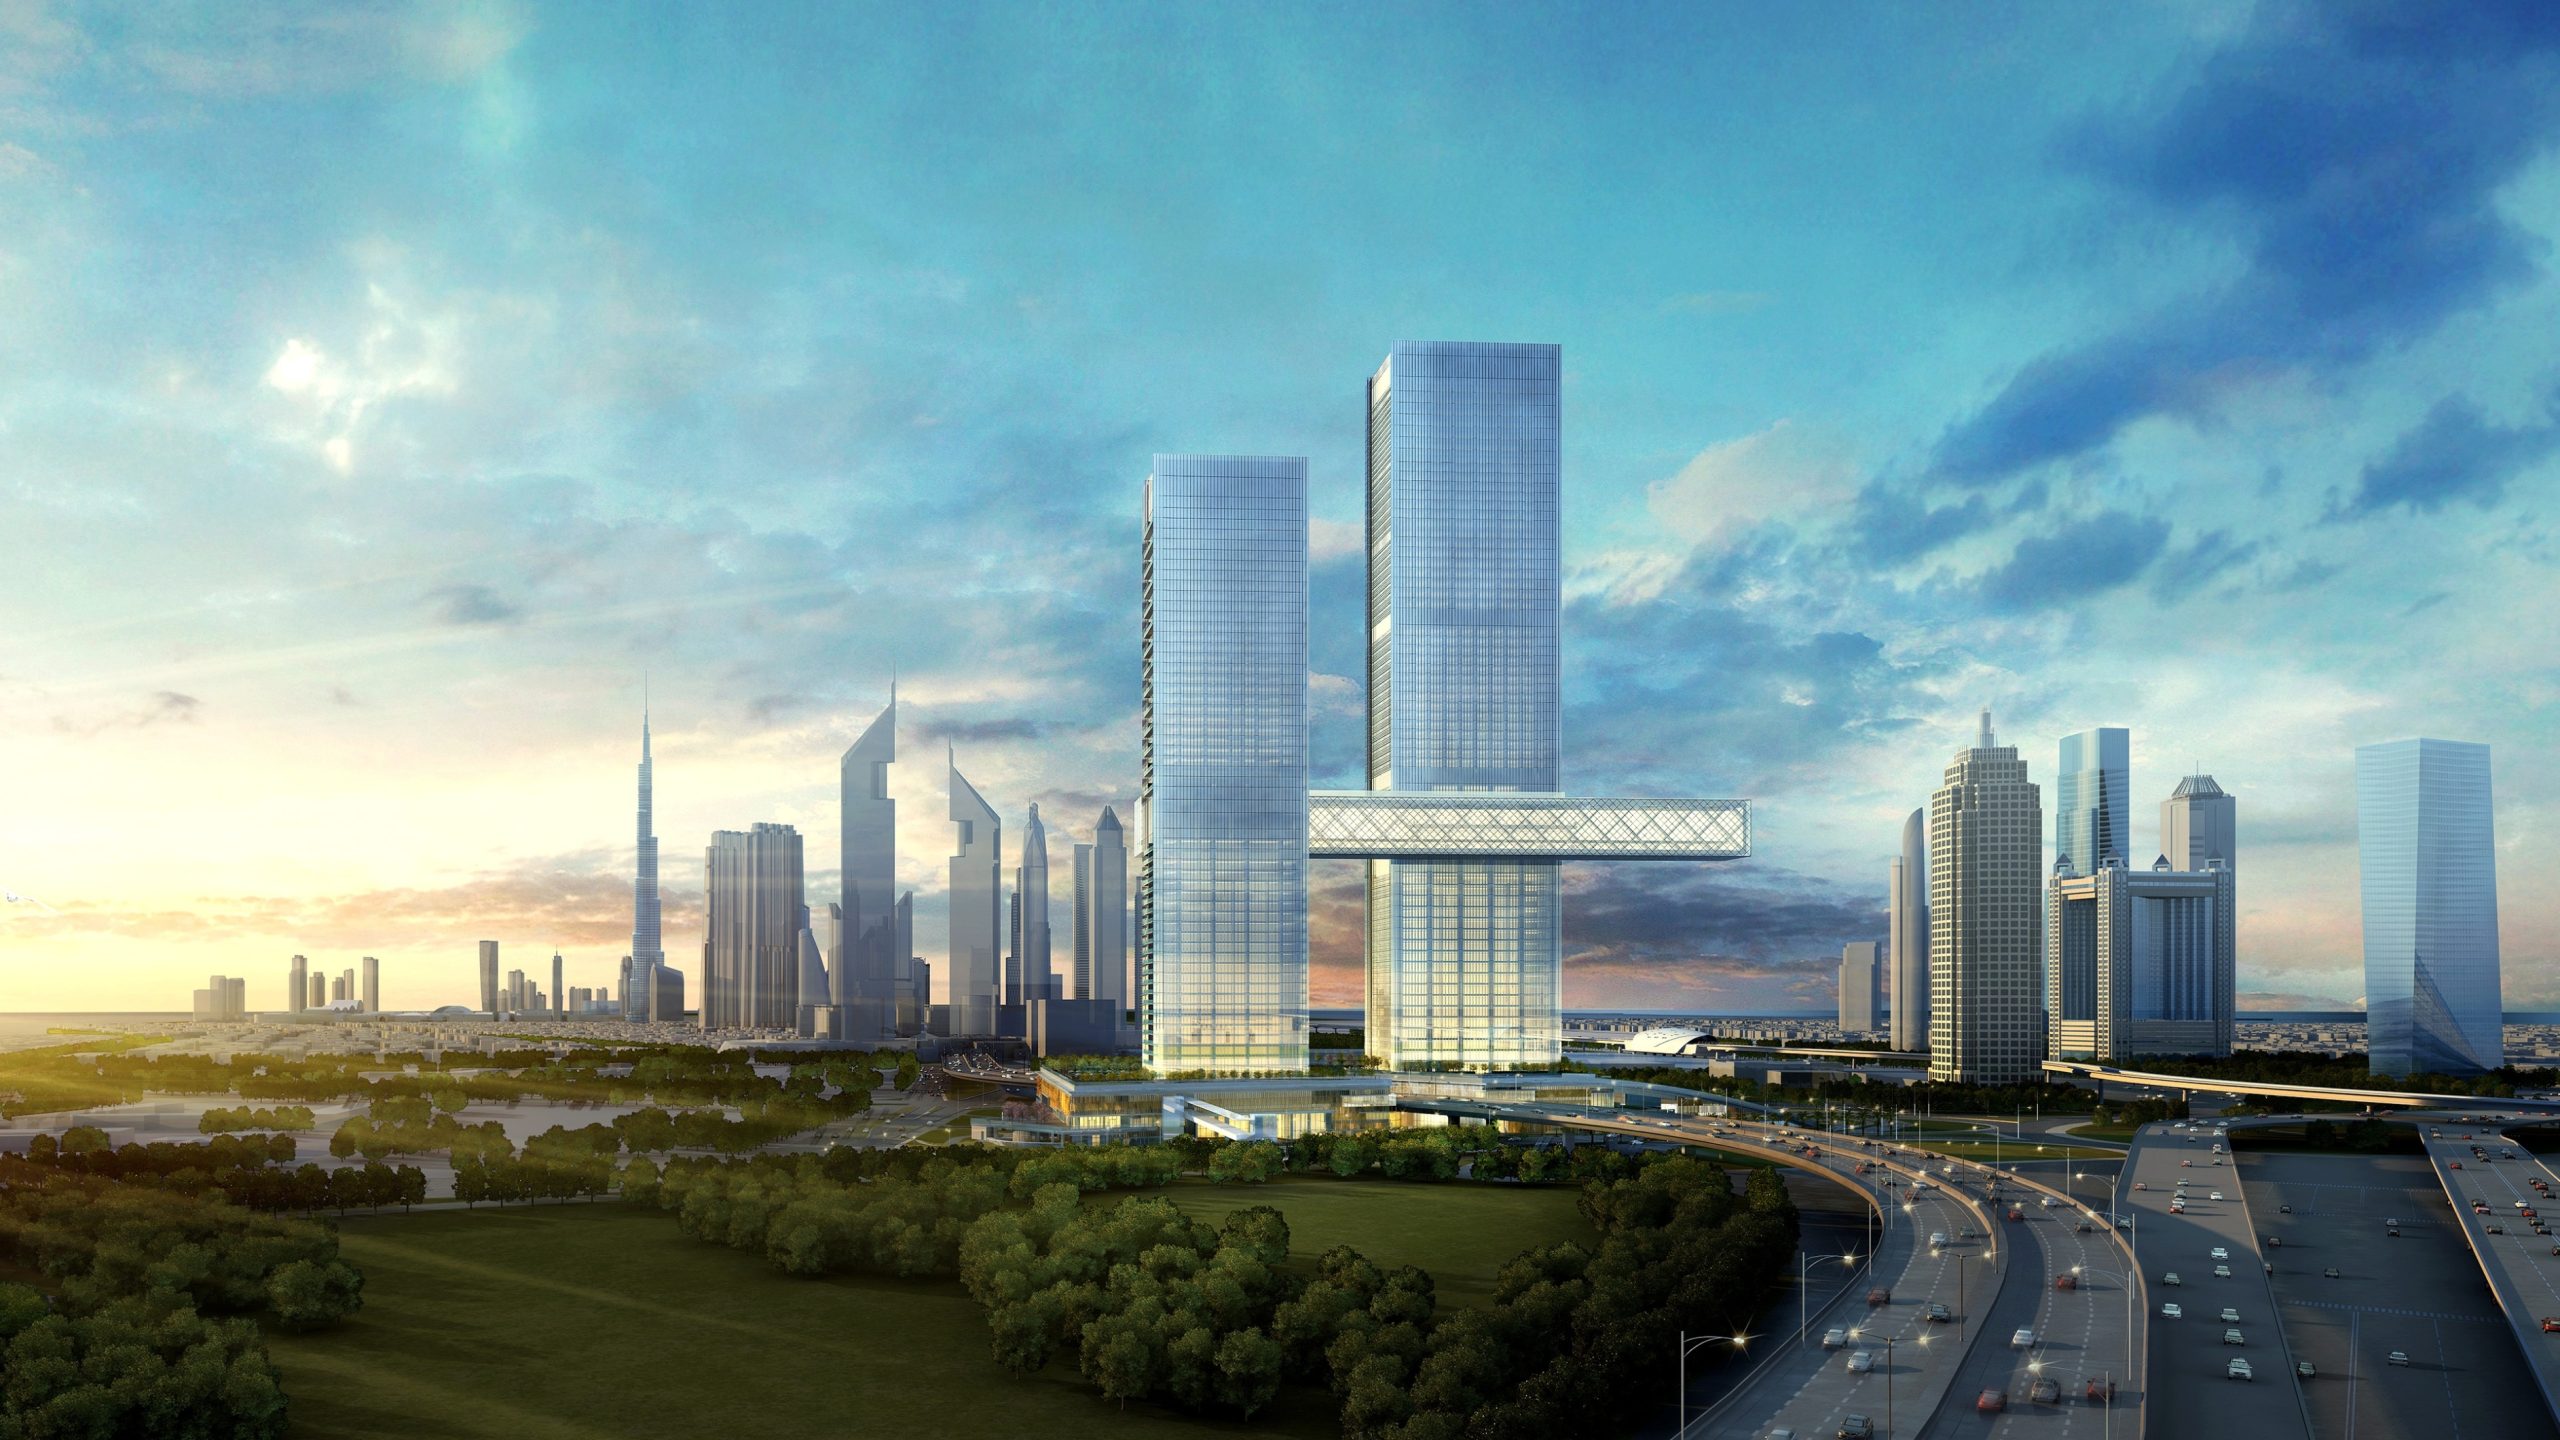 كيرزنر الدولية وإثراء دبي تطلقان أول فندق بعلامة سايرو ون زعبيل